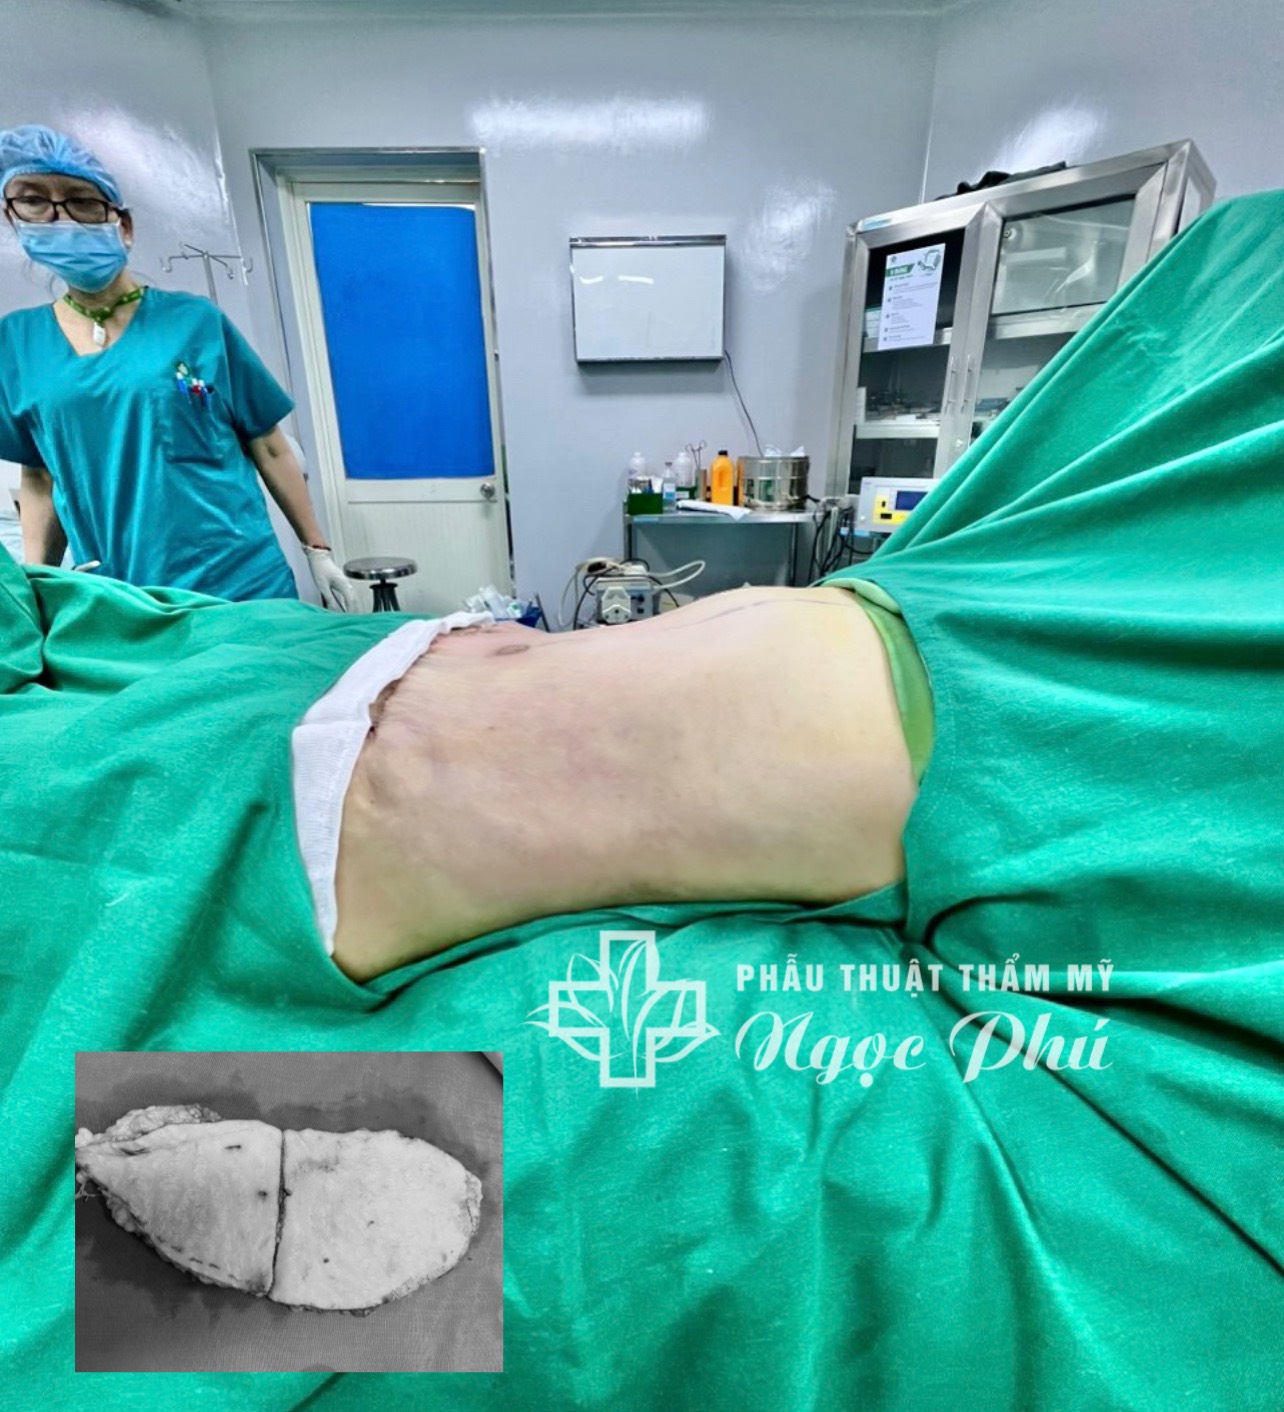 Hình ảnh khách hàng thực tế sau khi hút mỡ bụng và tạo hình thành bụng tại Bệnh viện Thẩm mỹ Ngọc Phú